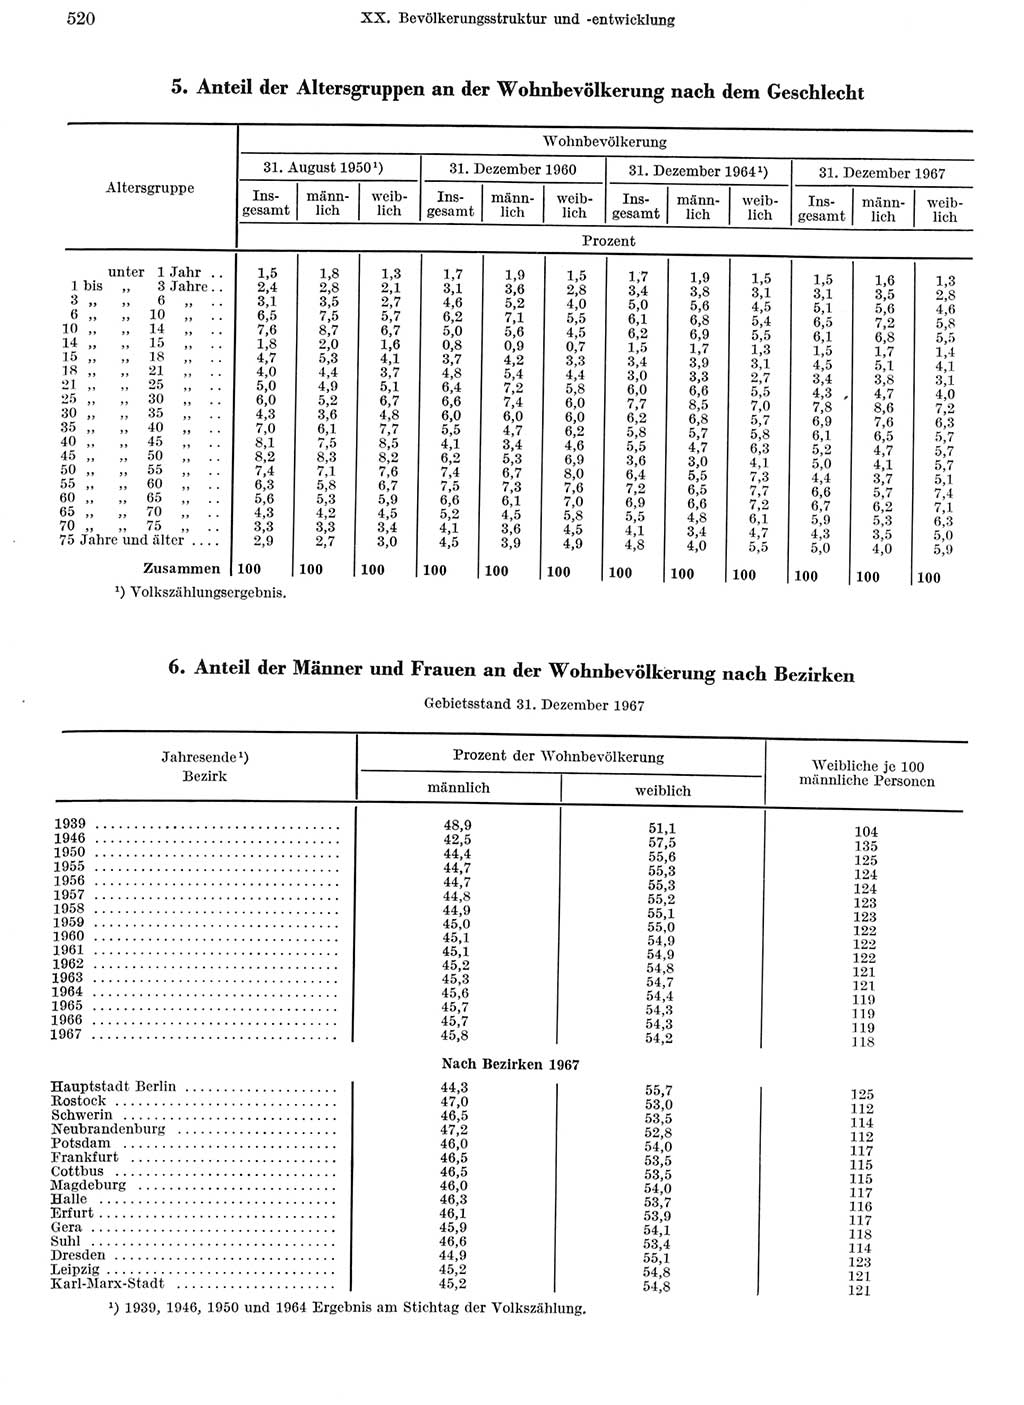 Statistisches Jahrbuch der Deutschen Demokratischen Republik (DDR) 1968, Seite 520 (Stat. Jb. DDR 1968, S. 520)